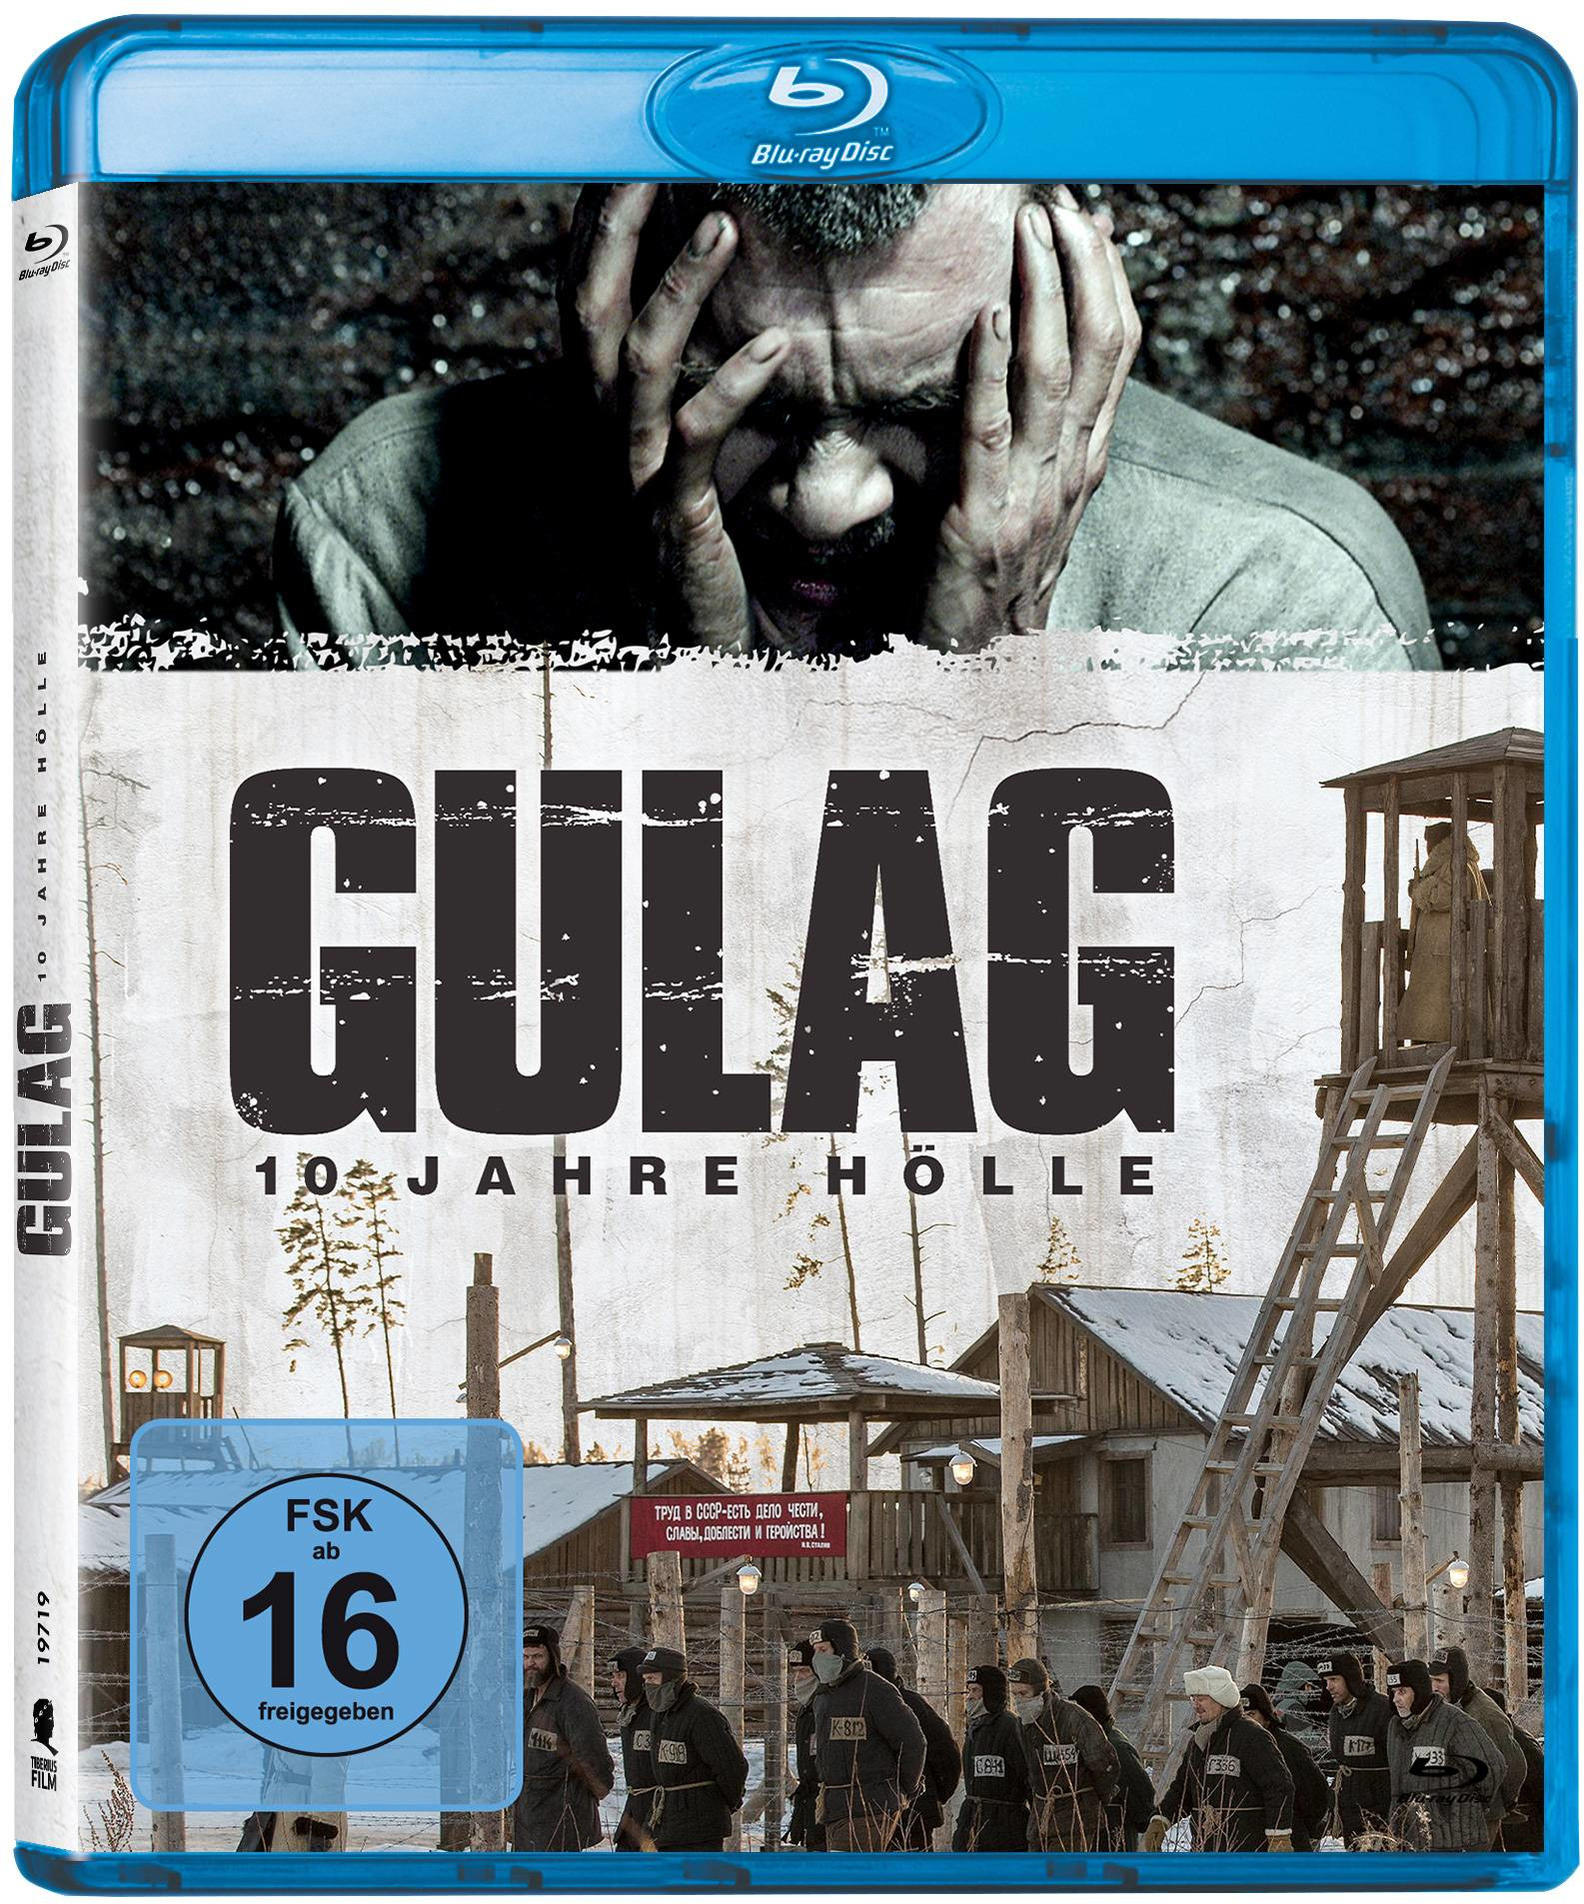 Gulag 10 Blu-ray - Hölle Jahre